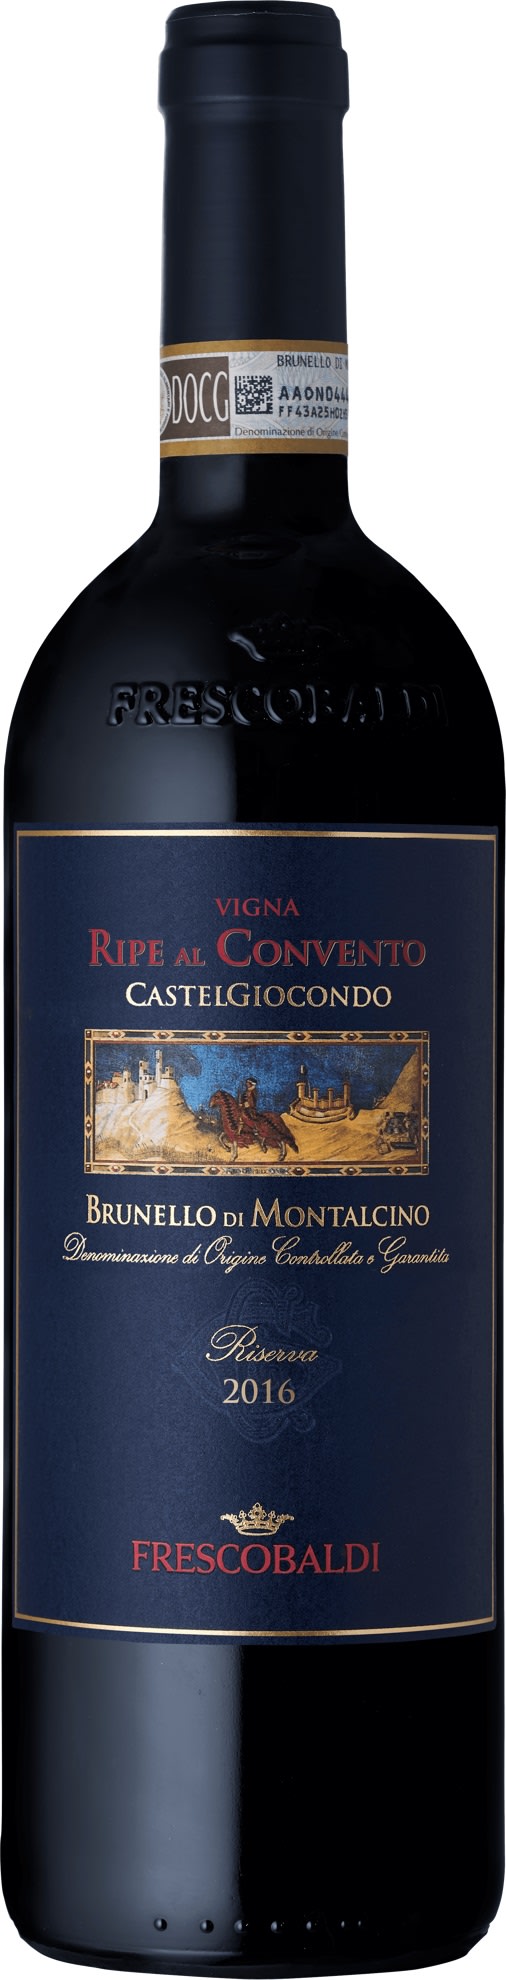 Frescobaldi Castelgiocondo Brunello di Montalcino Riserva DOCG 2017 6x75cl - Just Wines 